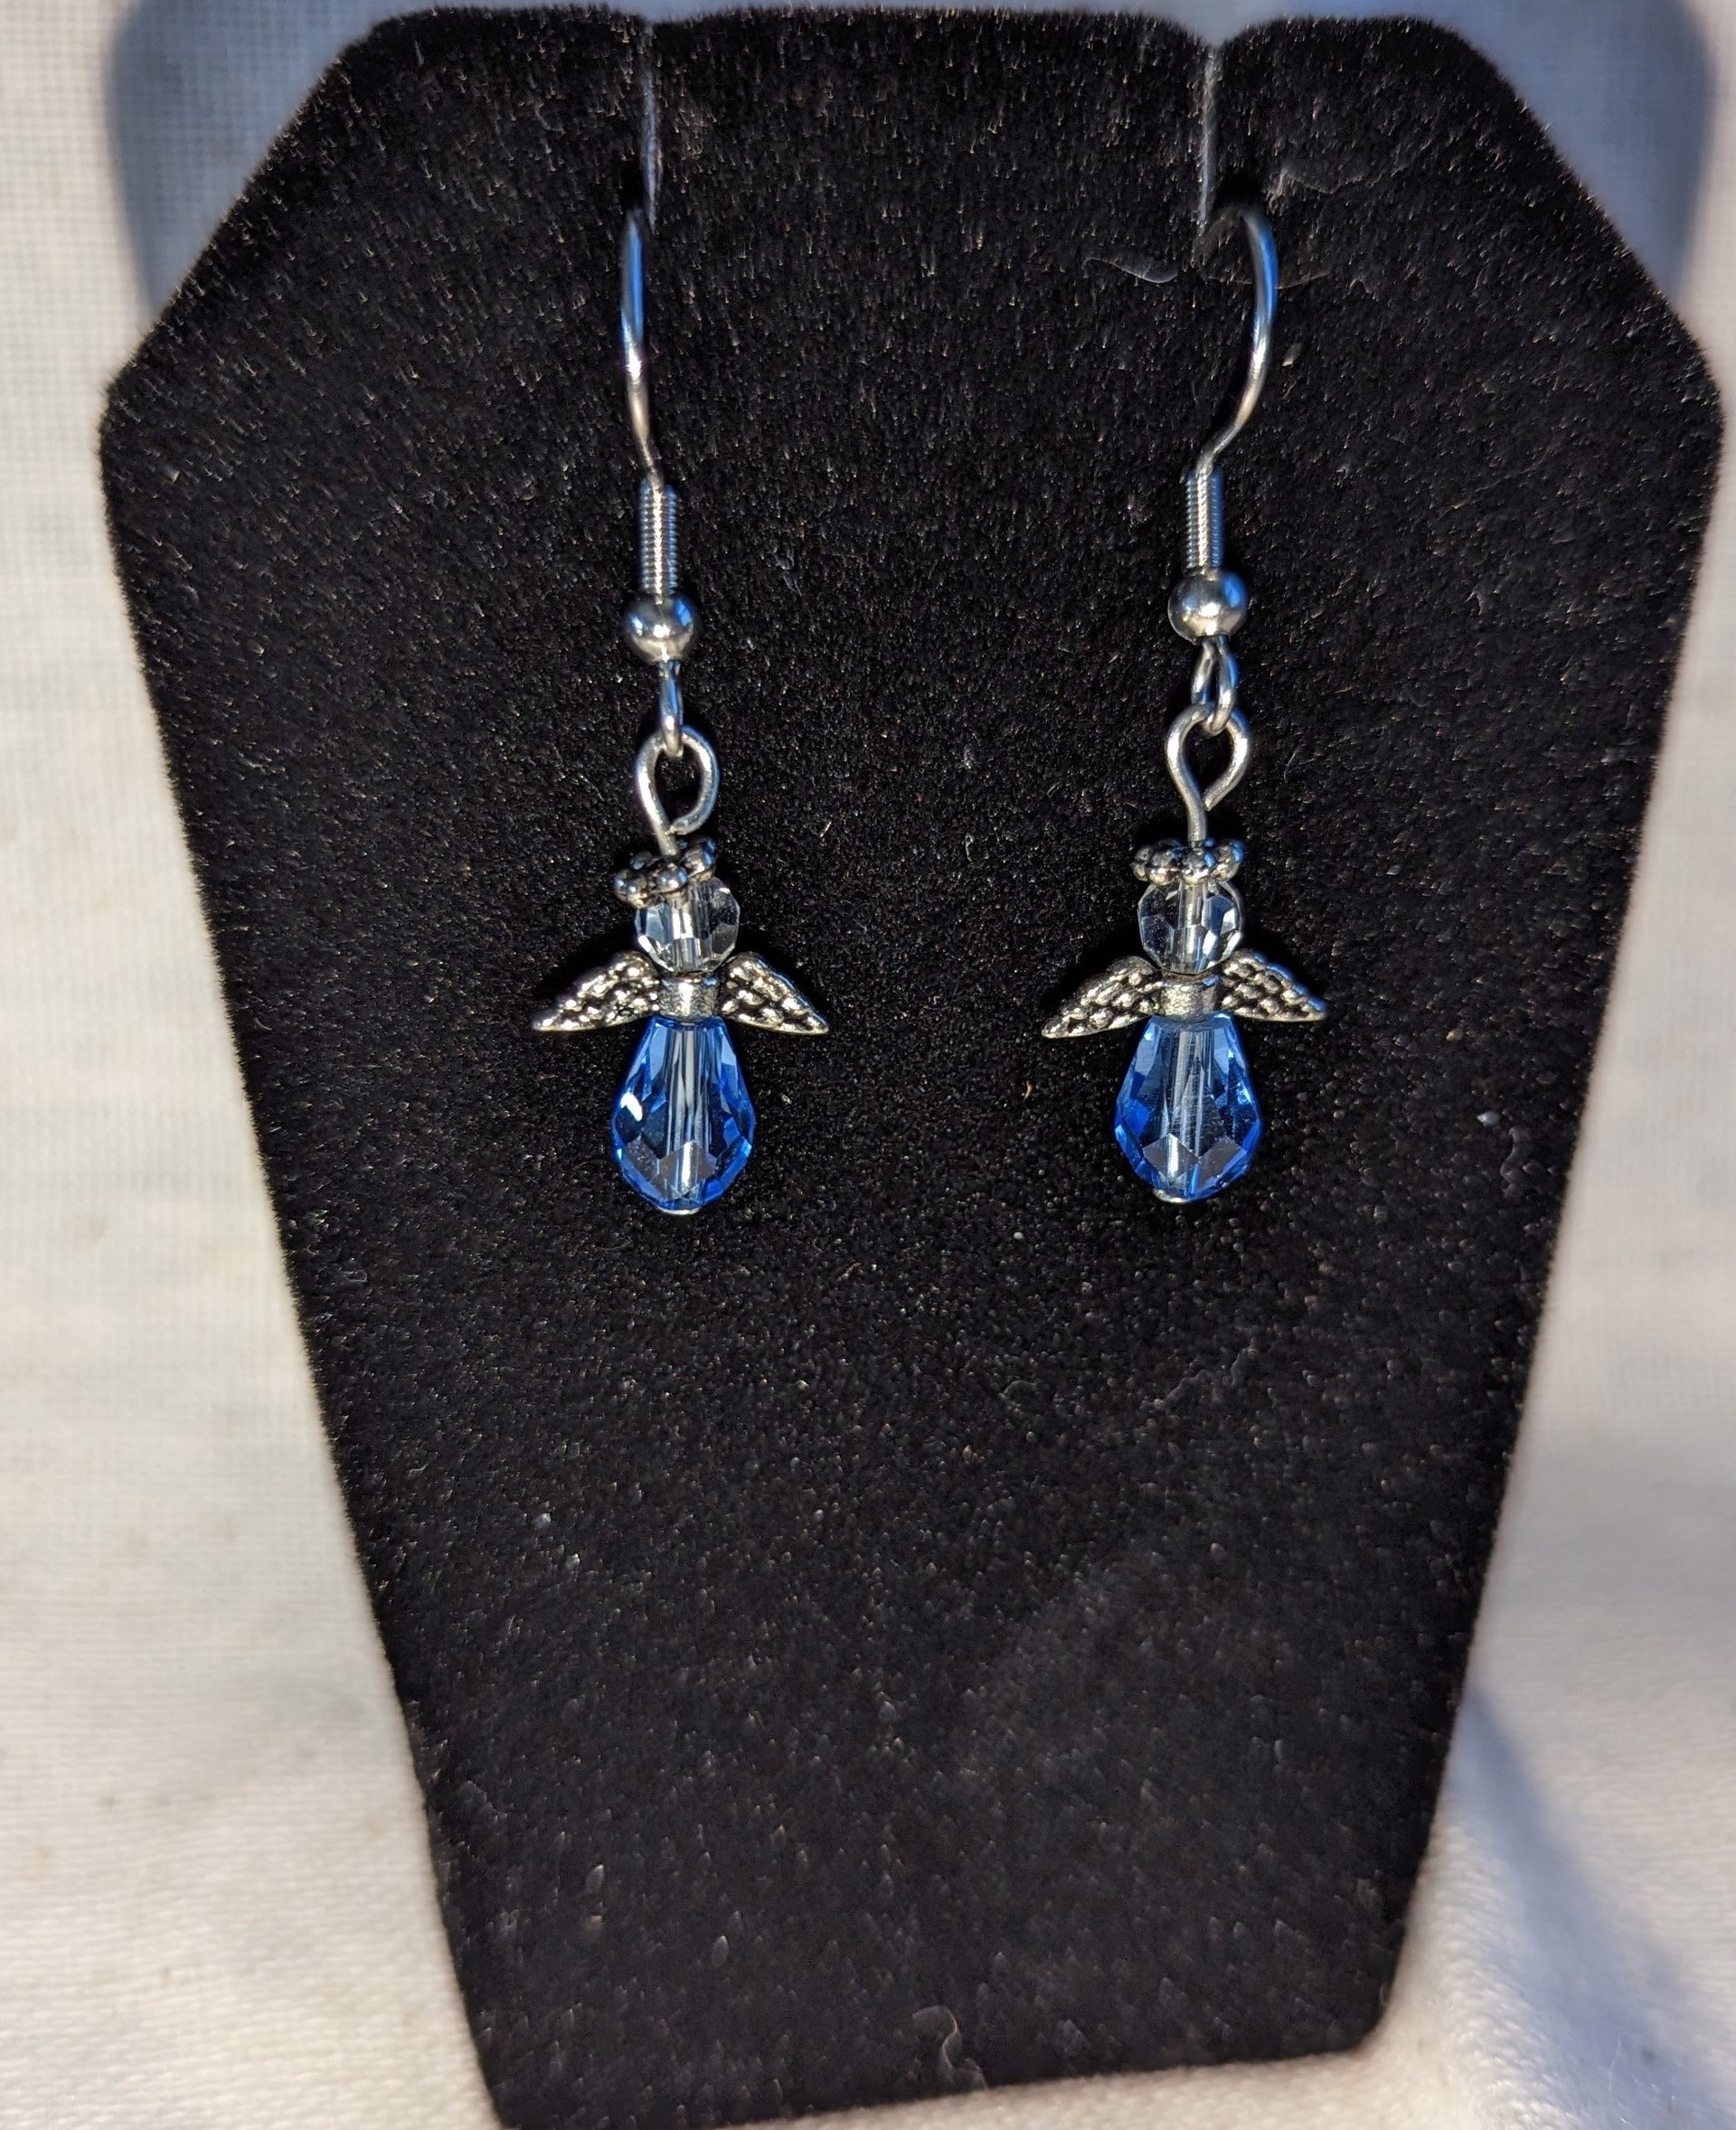 Blue angel earrings by Betty Binder